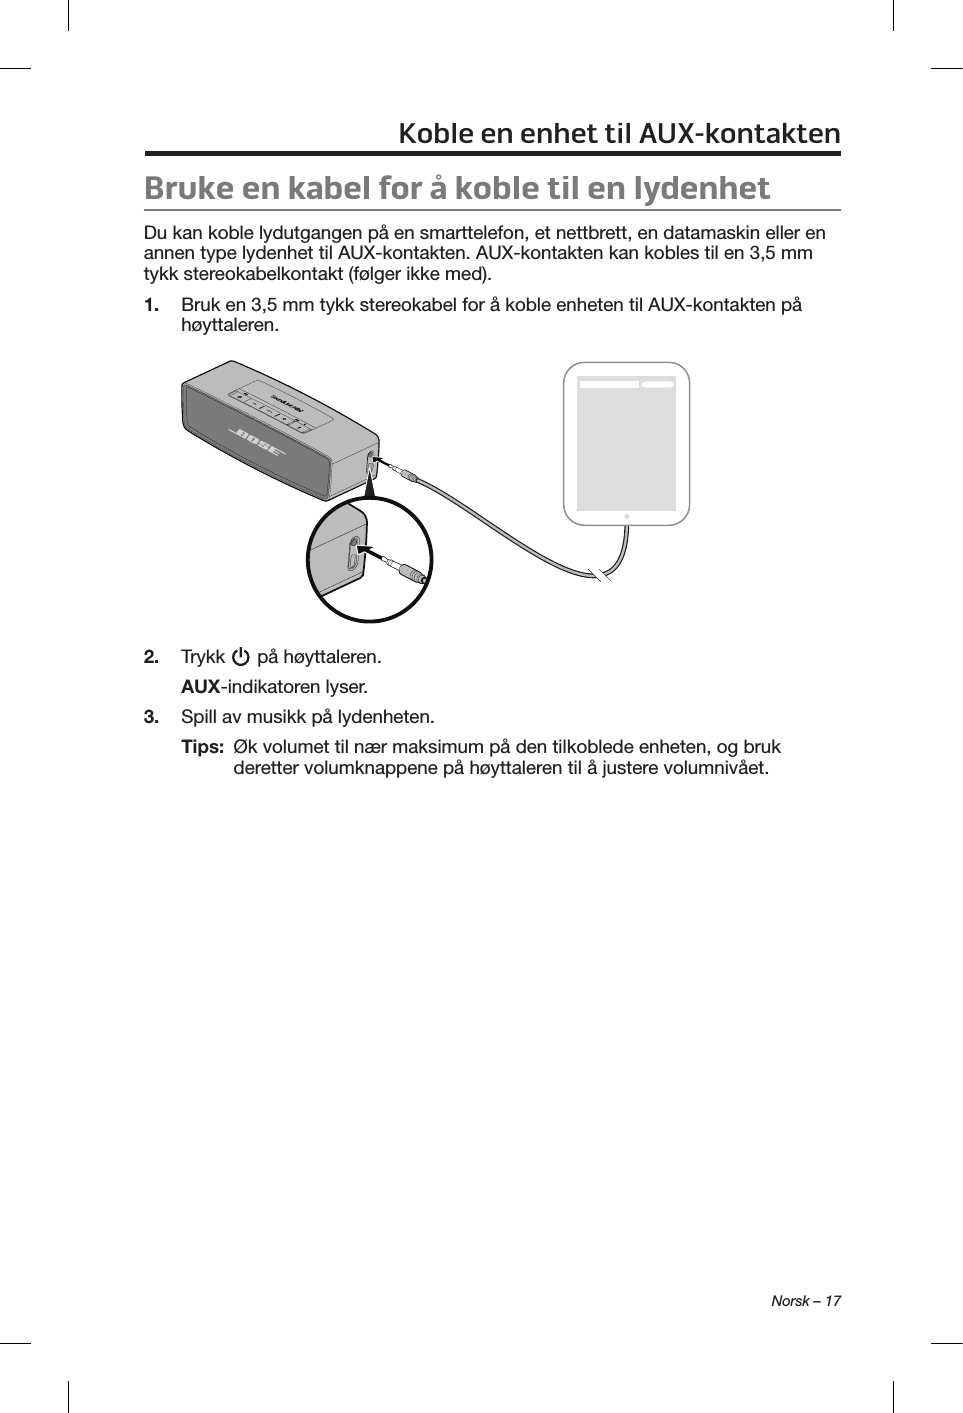  Norsk – 17Koble en enhet til AUX-kontaktenBruke en kabel for å koble til en lydenhetDu kan koble lydutgangen på en smarttelefon, et nettbrett, en datamaskin eller en annen type lydenhet til AUX-kontakten. AUX-kontakten kan kobles til en 3,5 mm tykk stereokabelkontakt (følger ikke med).1.  Bruk en 3,5 mm tykk stereokabel for å koble enheten til AUX-kontakten på høyttaleren.2.  Trykk   på høyttaleren.AUX-indikatoren lyser.3.  Spill av musikk på lydenheten.Tips:   Øk volumet til nær maksimum på den tilkoblede enheten, og bruk deretter volumknappene på høyttaleren til å justere volumnivået.